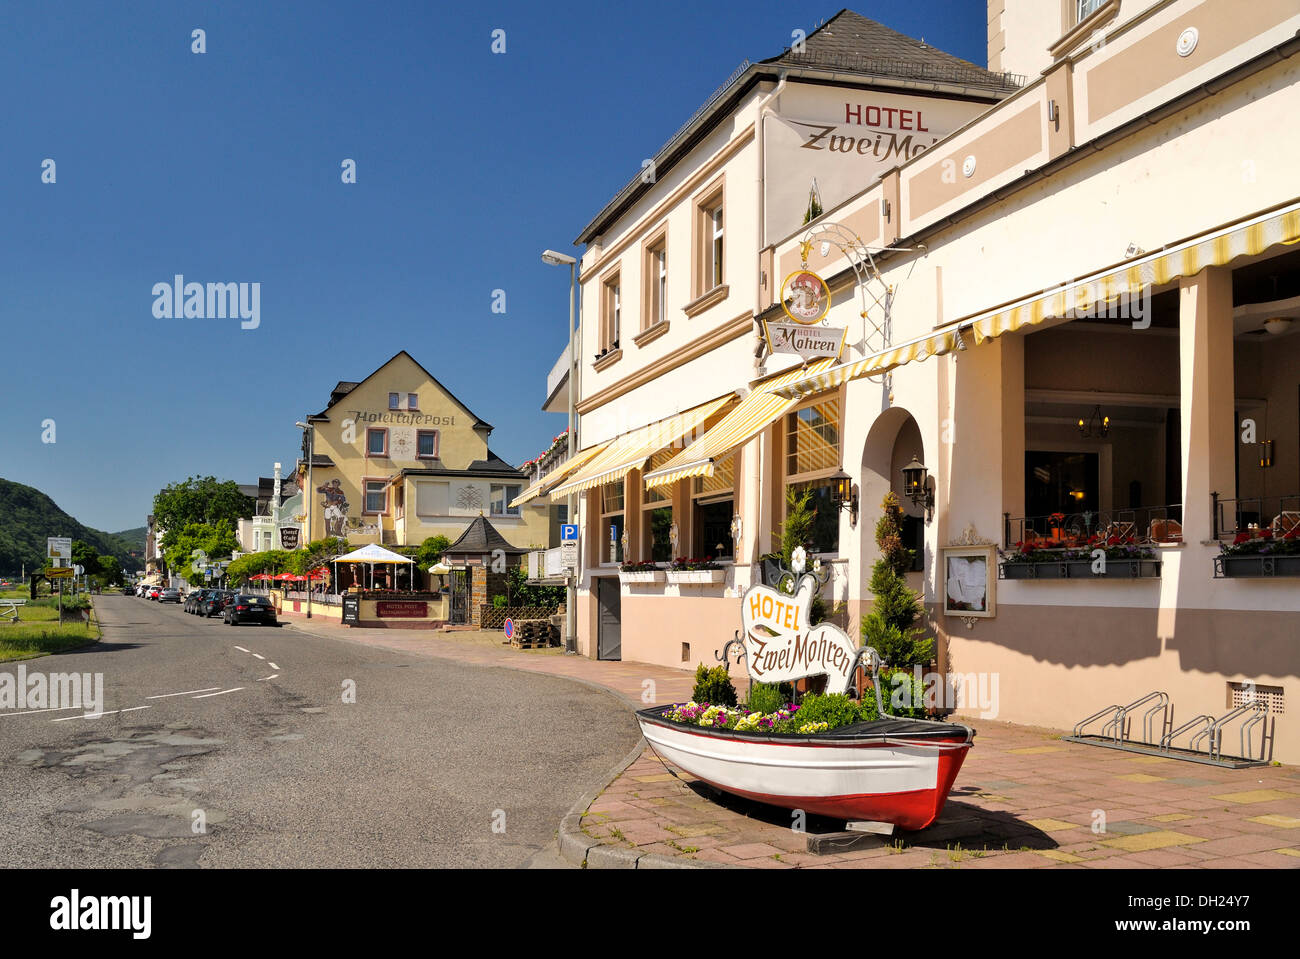 Zwei Mohren Hotel, Assmannshausen, Upper Middle Rhine Valley, a UNESCO World Heritage Site, Rhineland-Palatinate Stock Photo